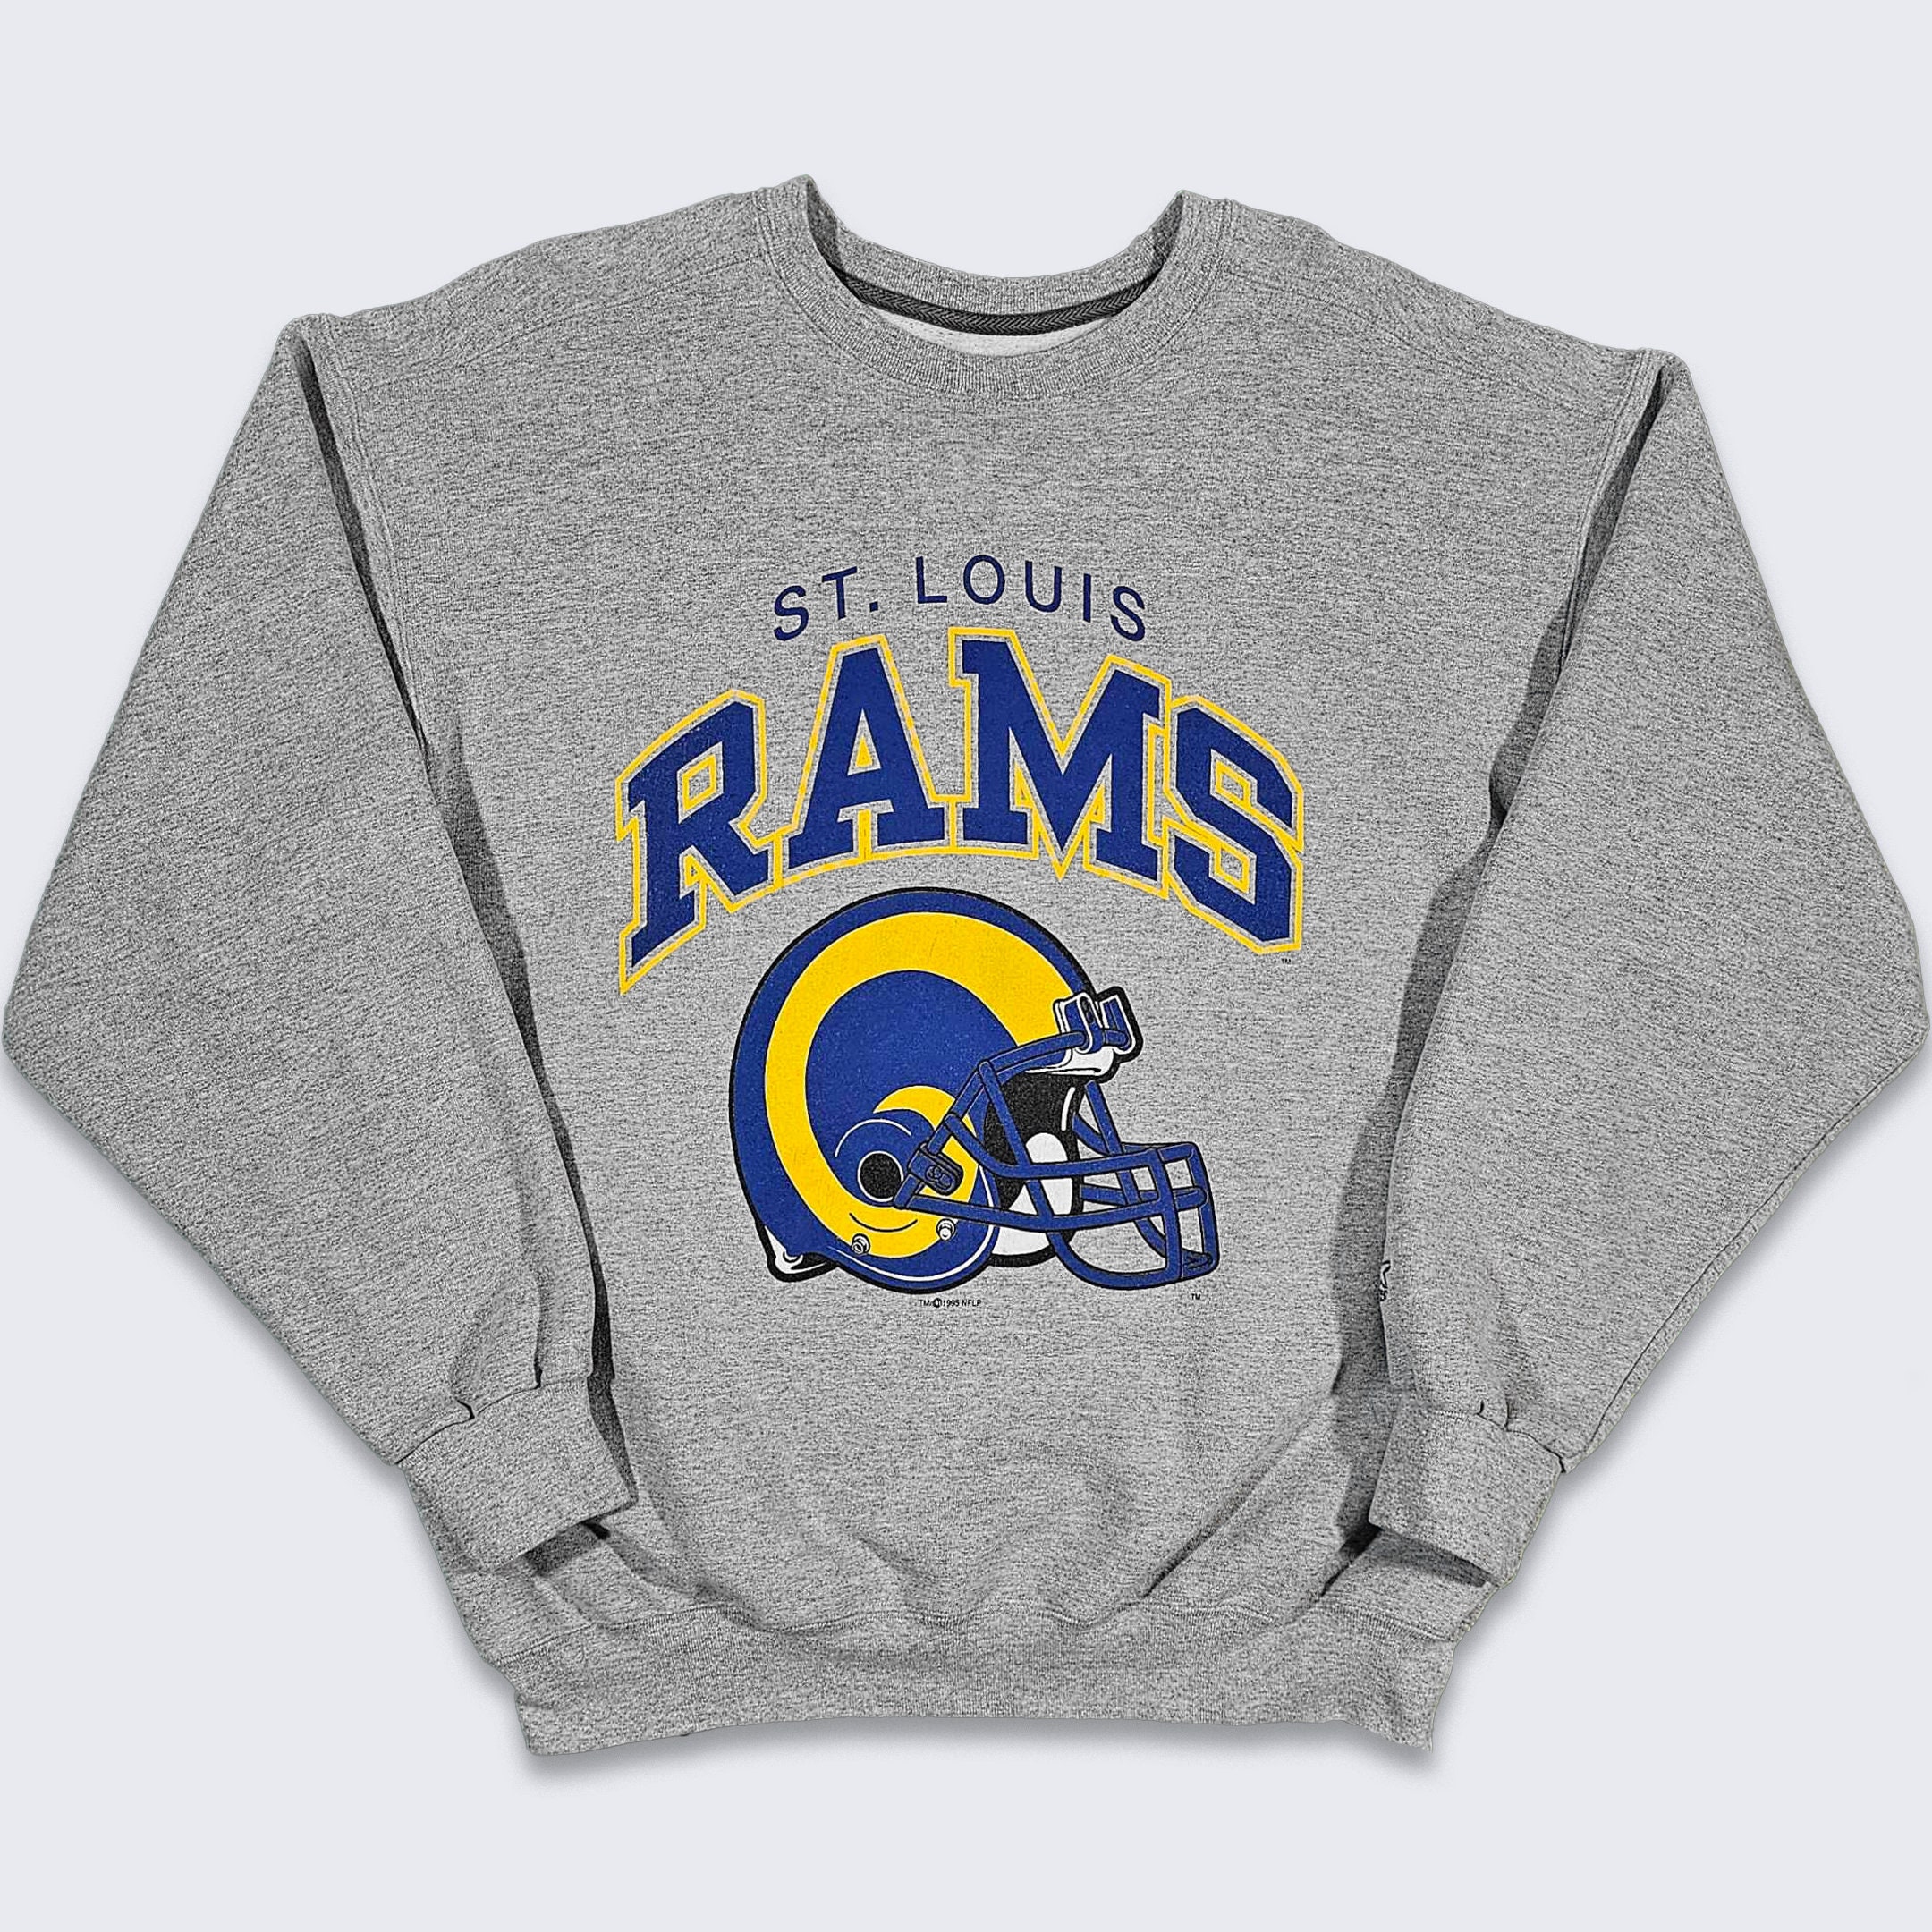 Vintage 90s Distressed NFL ST. Louis Rams Sweatshirt Rams 